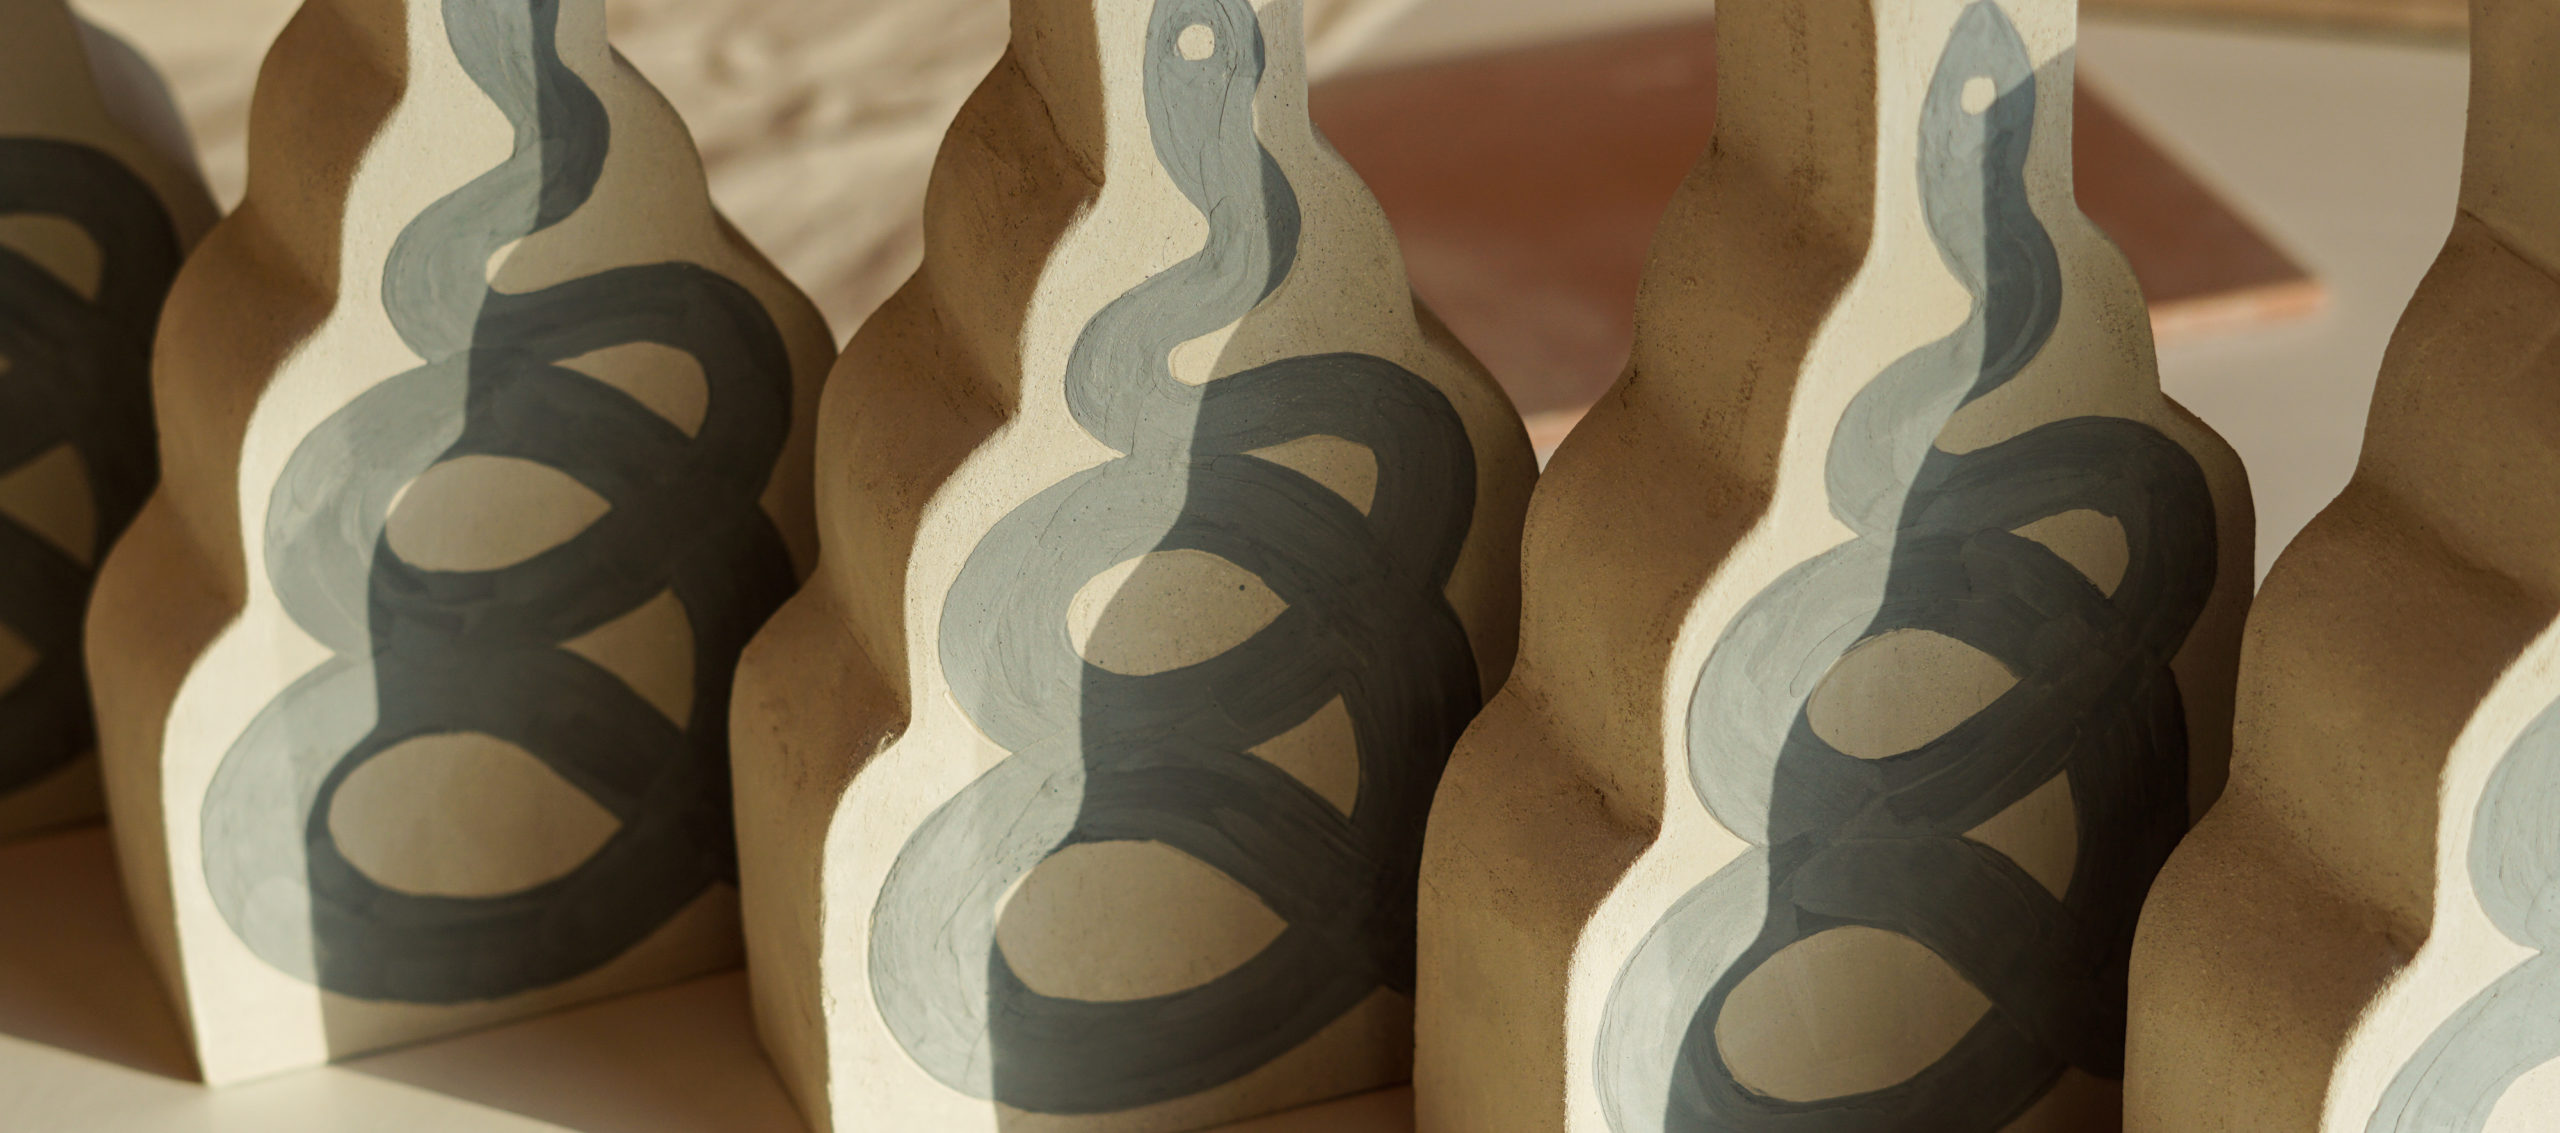 Misc, Pezzi di ceramica fatti a mano nel cuore di Ruzafa